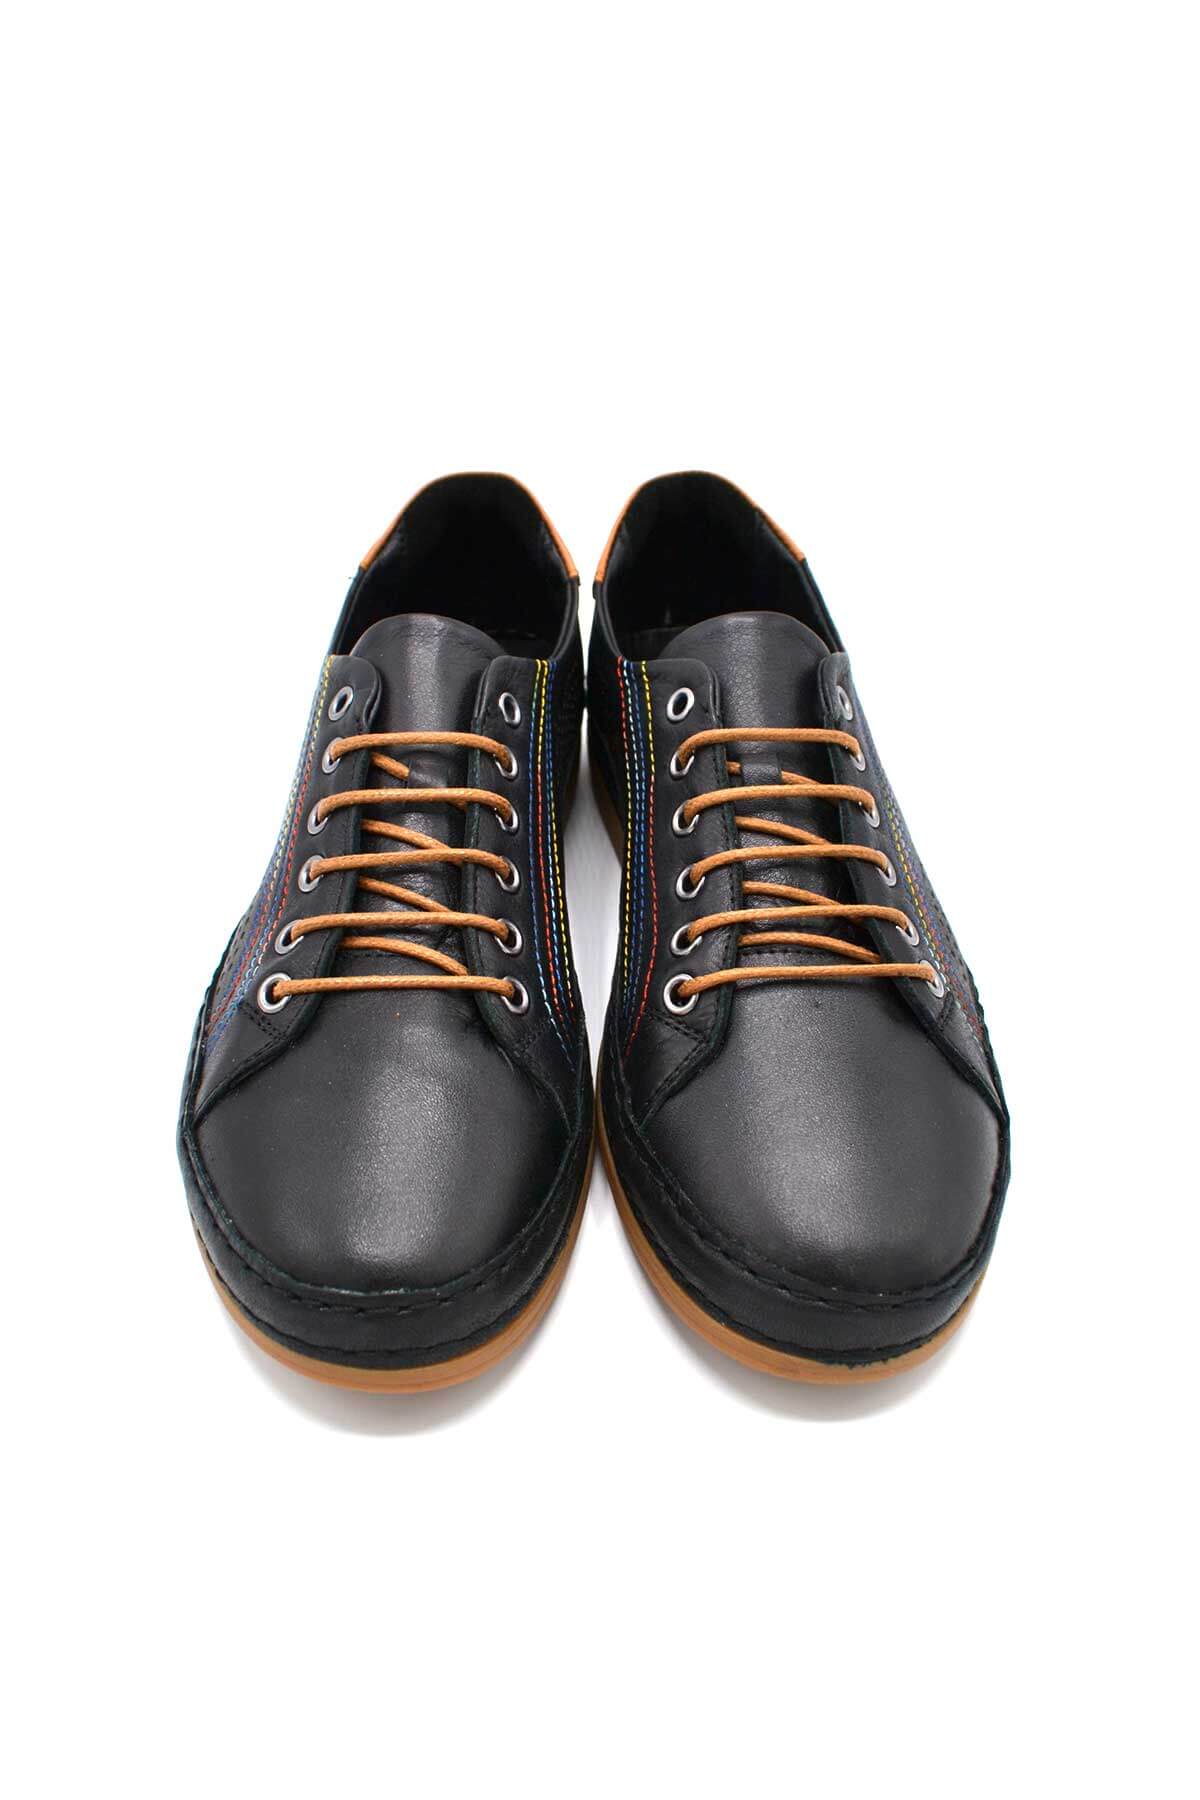 Kadın Comfort Deri Ayakkabı Siyah 2211204Y - Thumbnail